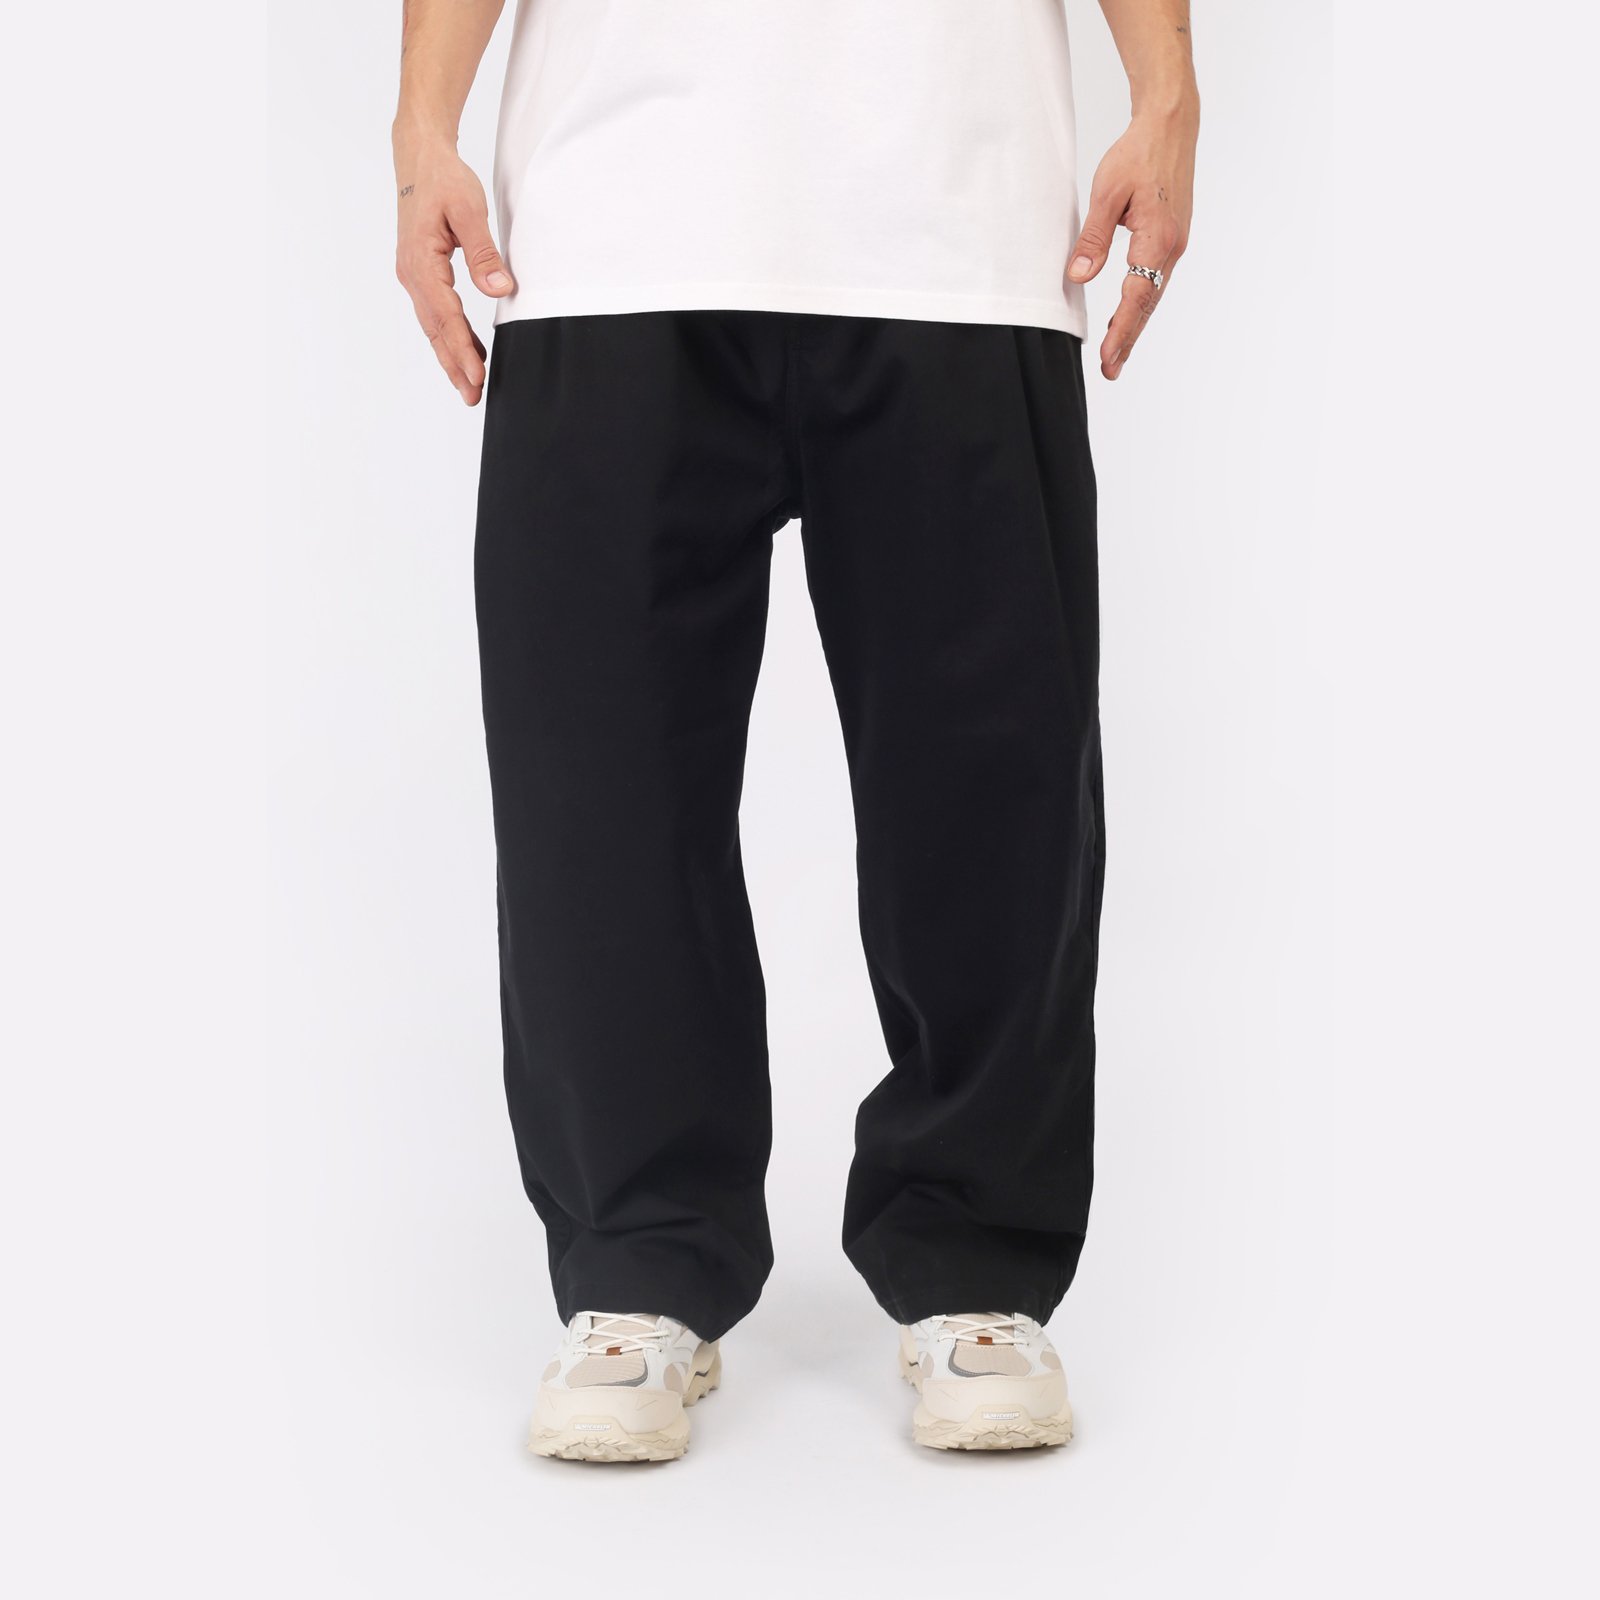 мужские черные брюки Carhartt WIP Marv Pant I033129-black - цена, описание, фото 1